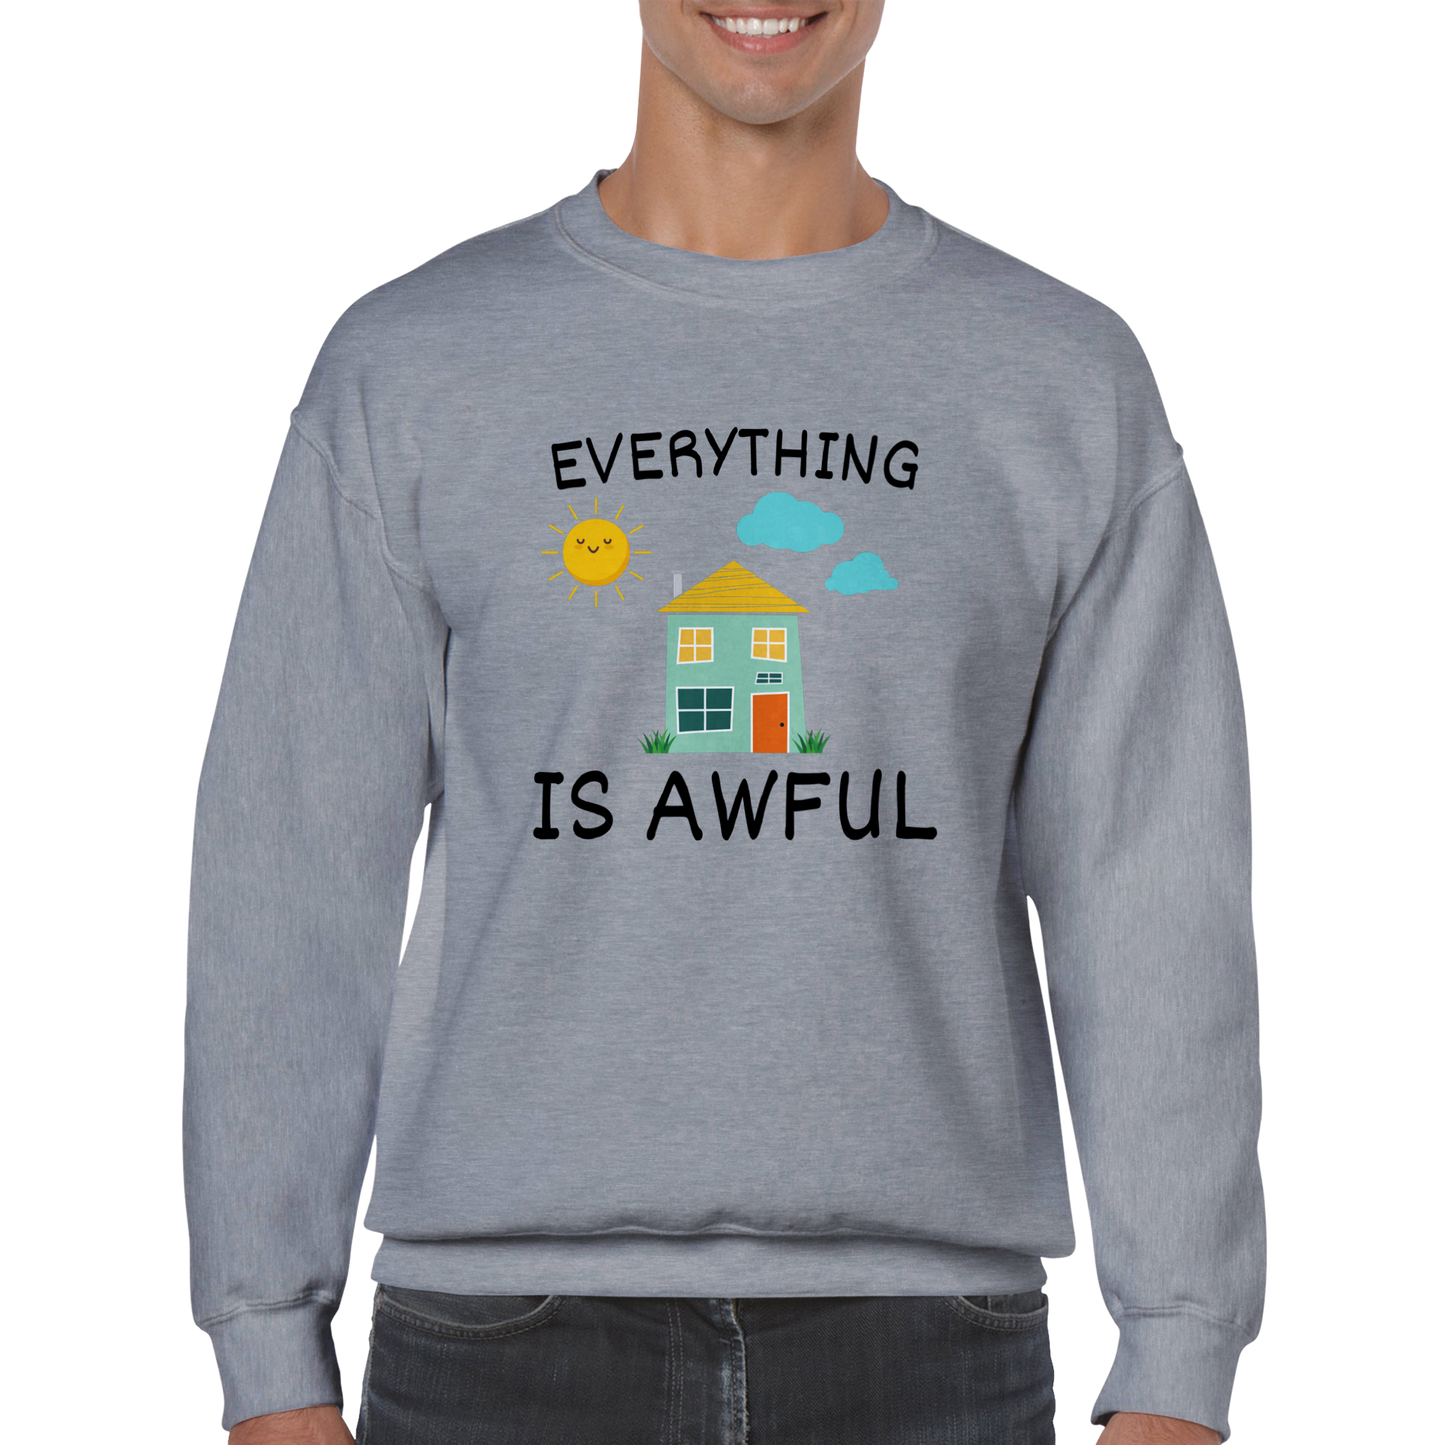 Everything is Awful - Classic Unisex Crewneck Sweatshirt